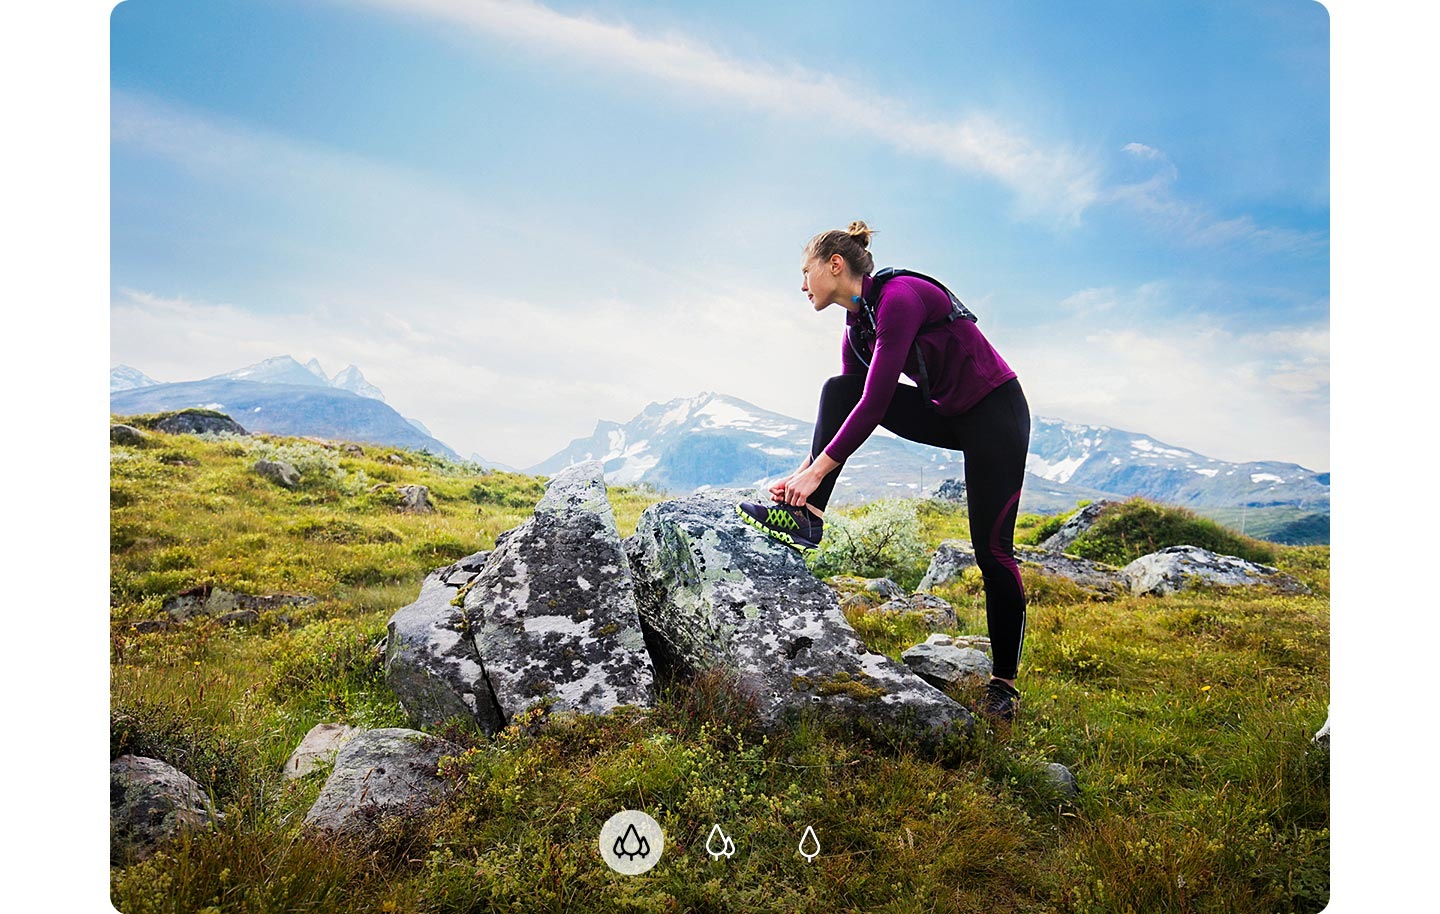 Una mujer mirando a lo lejos con un pie sobre una roca y montañas de fondo, lo que indica que el A72 puede capturar una imagen más amplia con la cámara ultraancha.